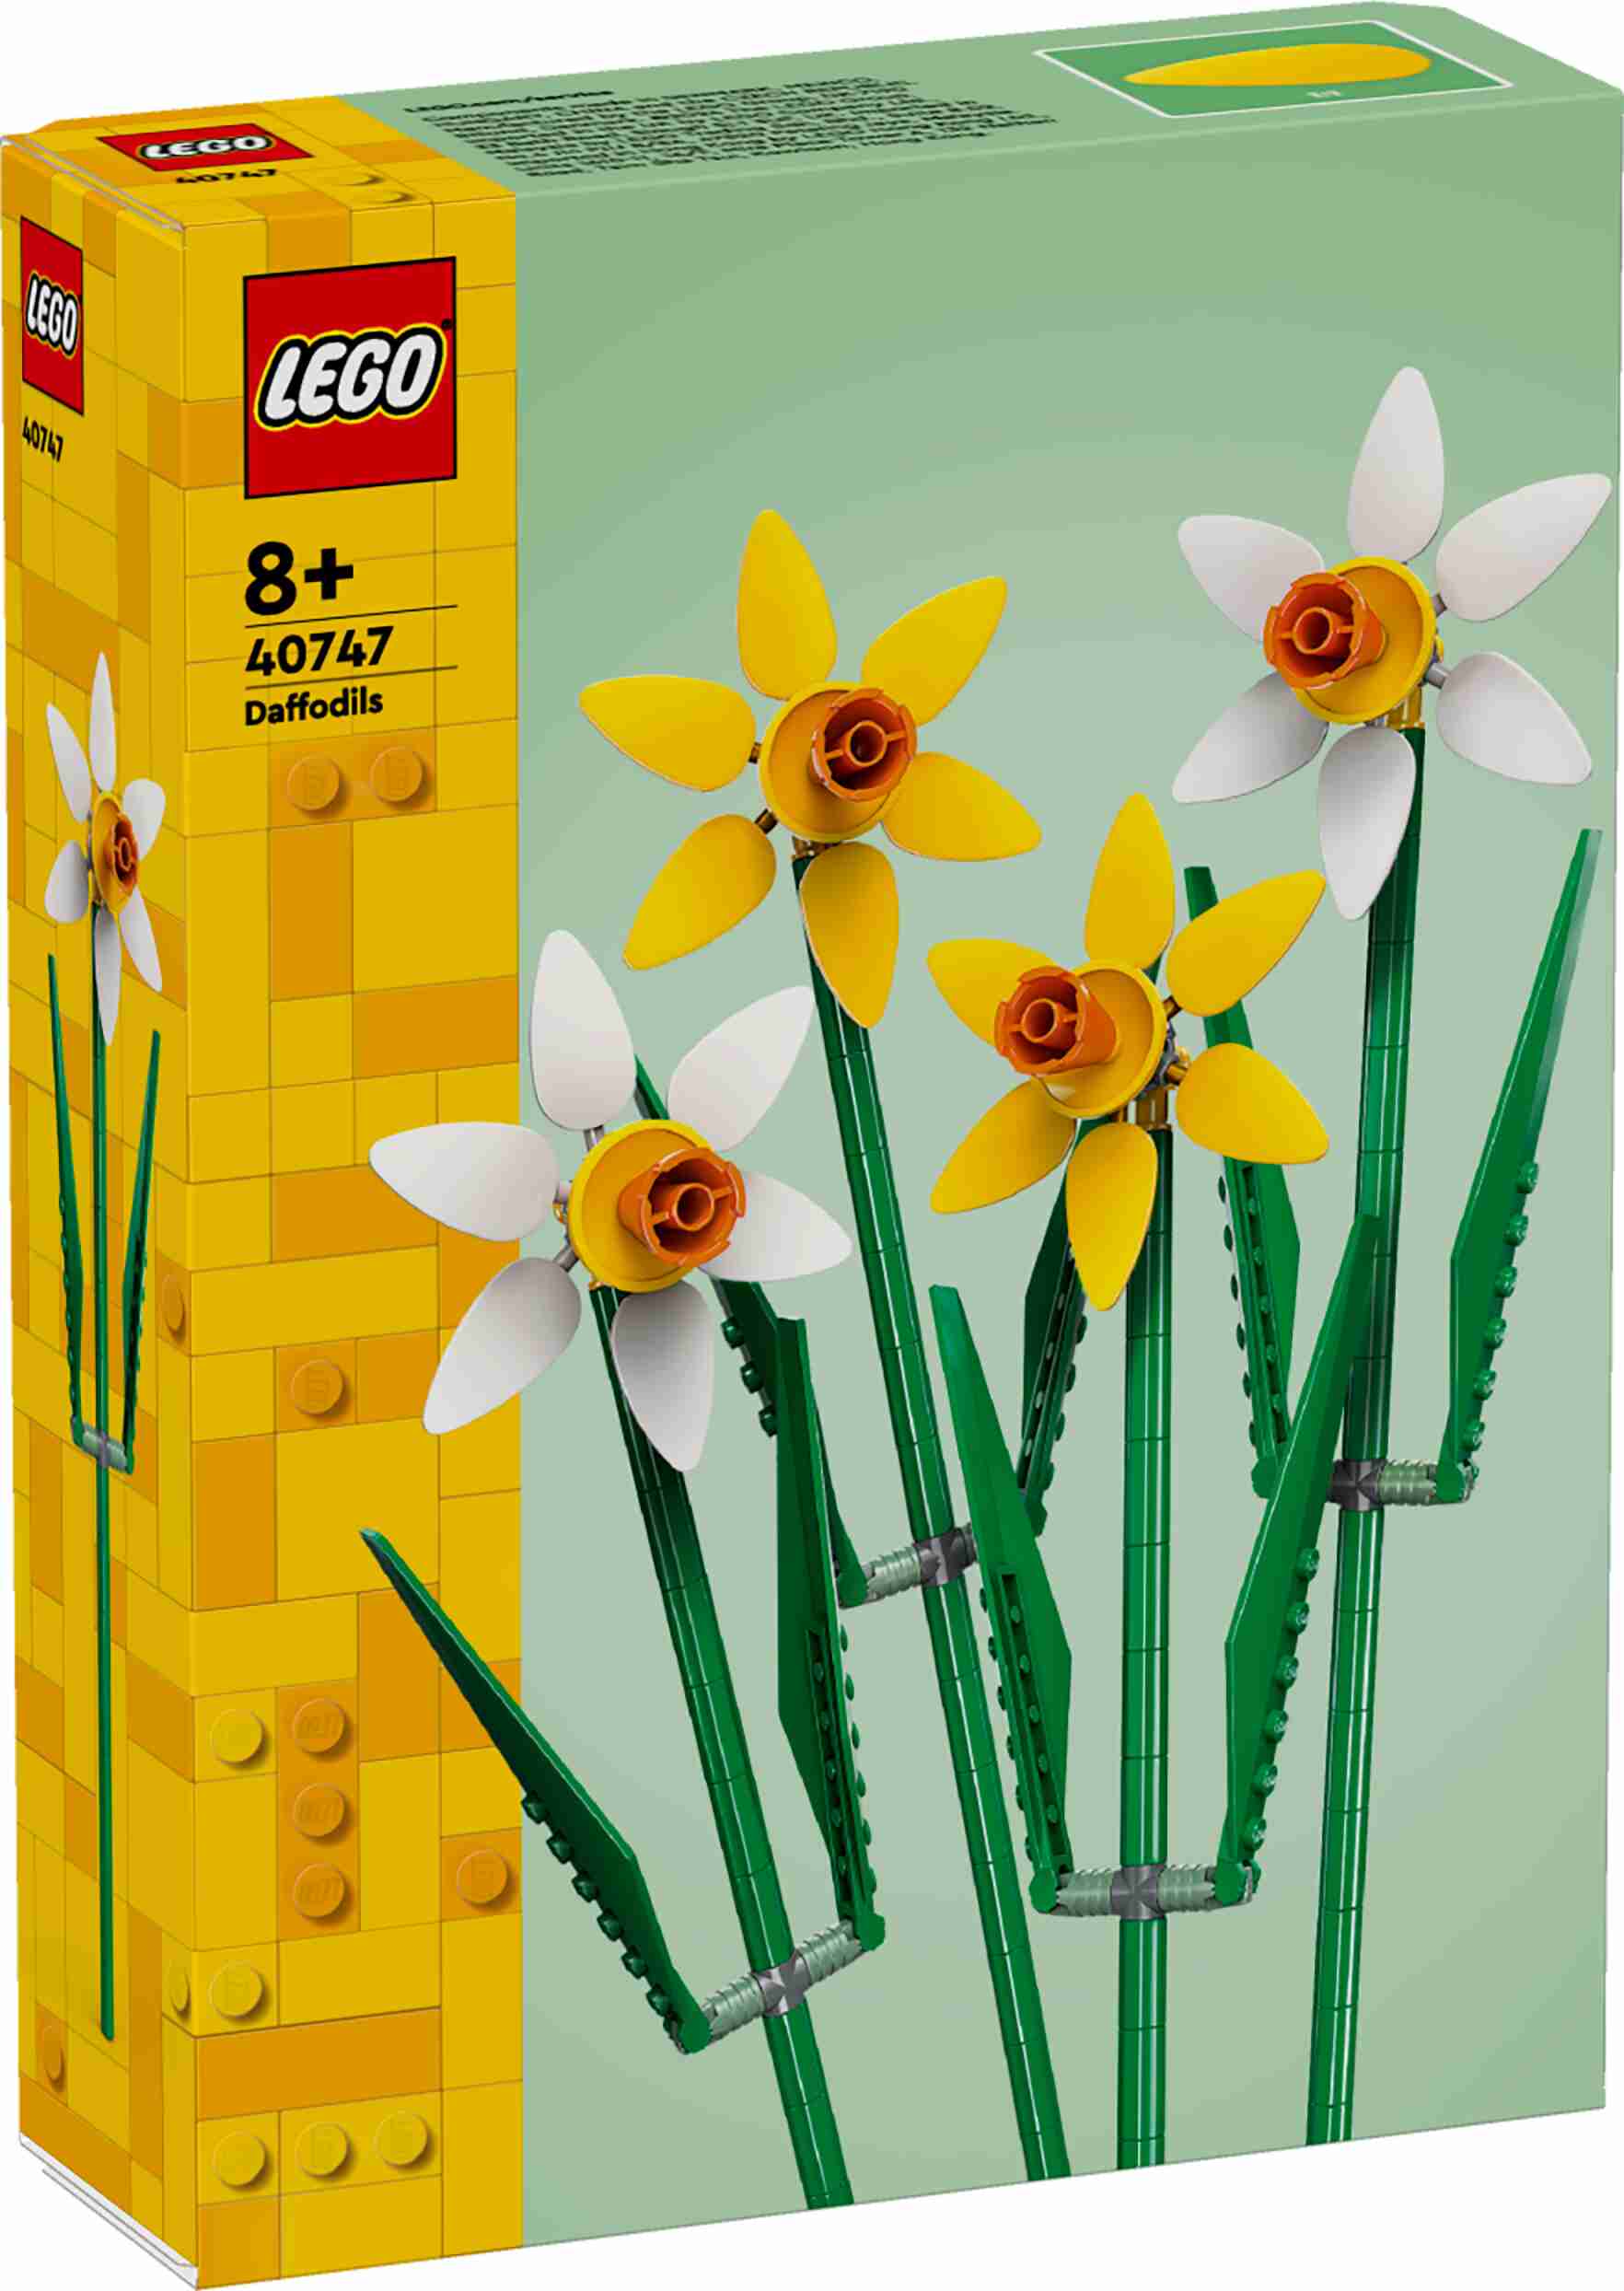 LEGO 40747 Iconic Narzissen, 2 gelbe und 2 weiße Narzissen